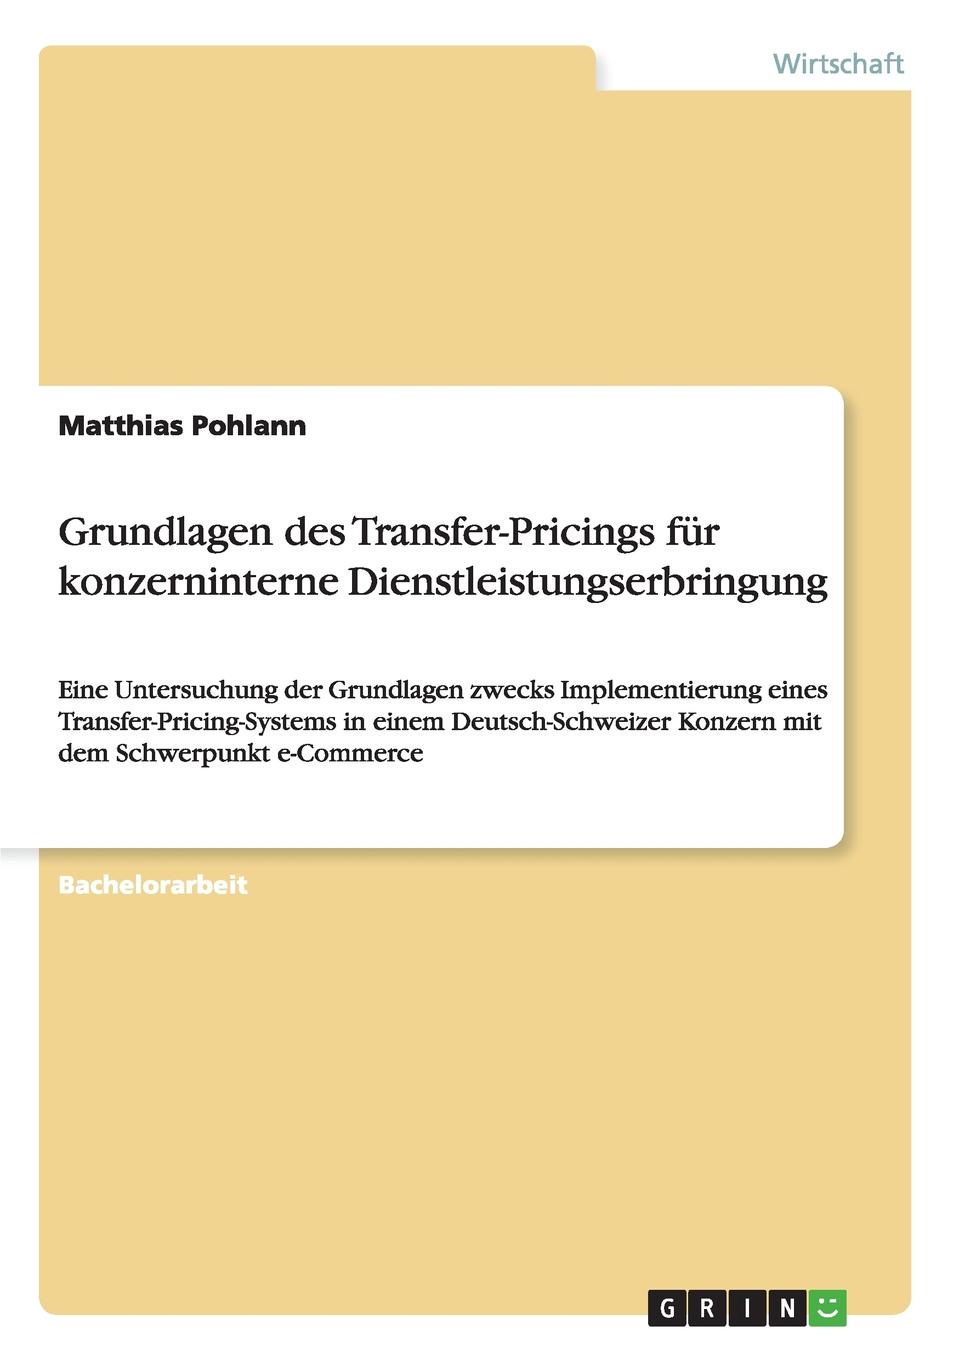 Grundlagen des Transfer-Pricings fur konzerninterne Dienstleistungserbringung